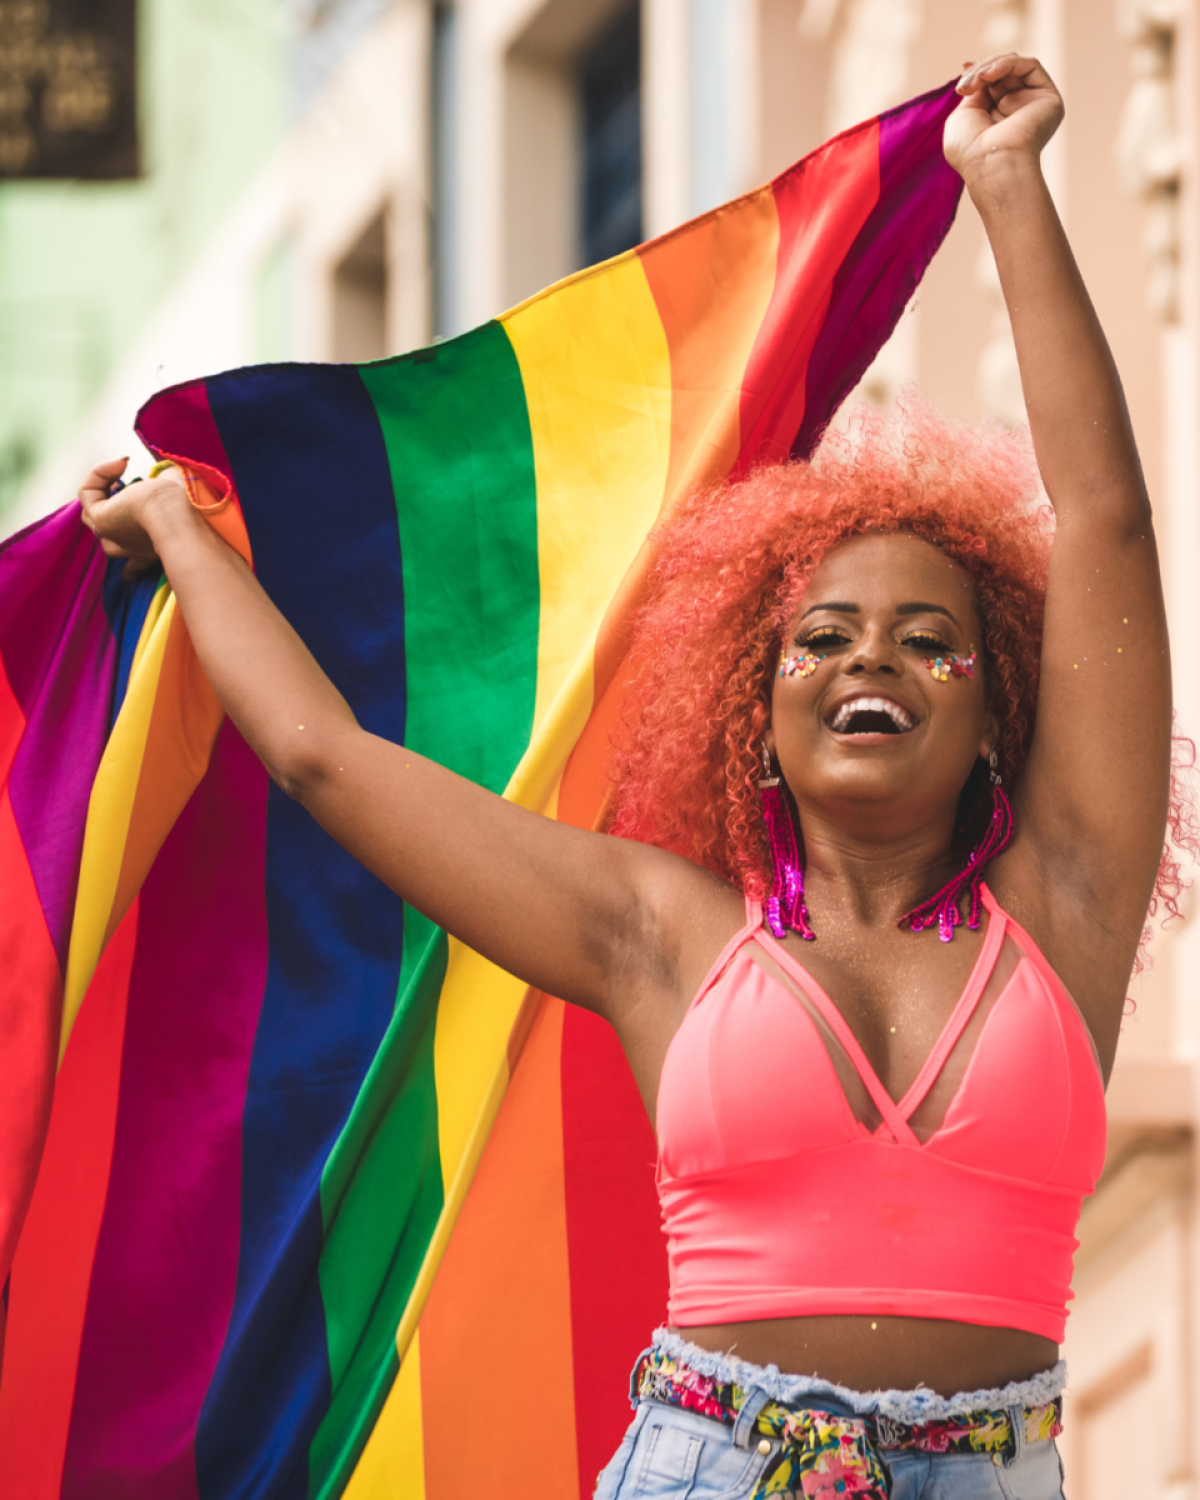 Orgulho LGBTI+: por que usamos esse termo?